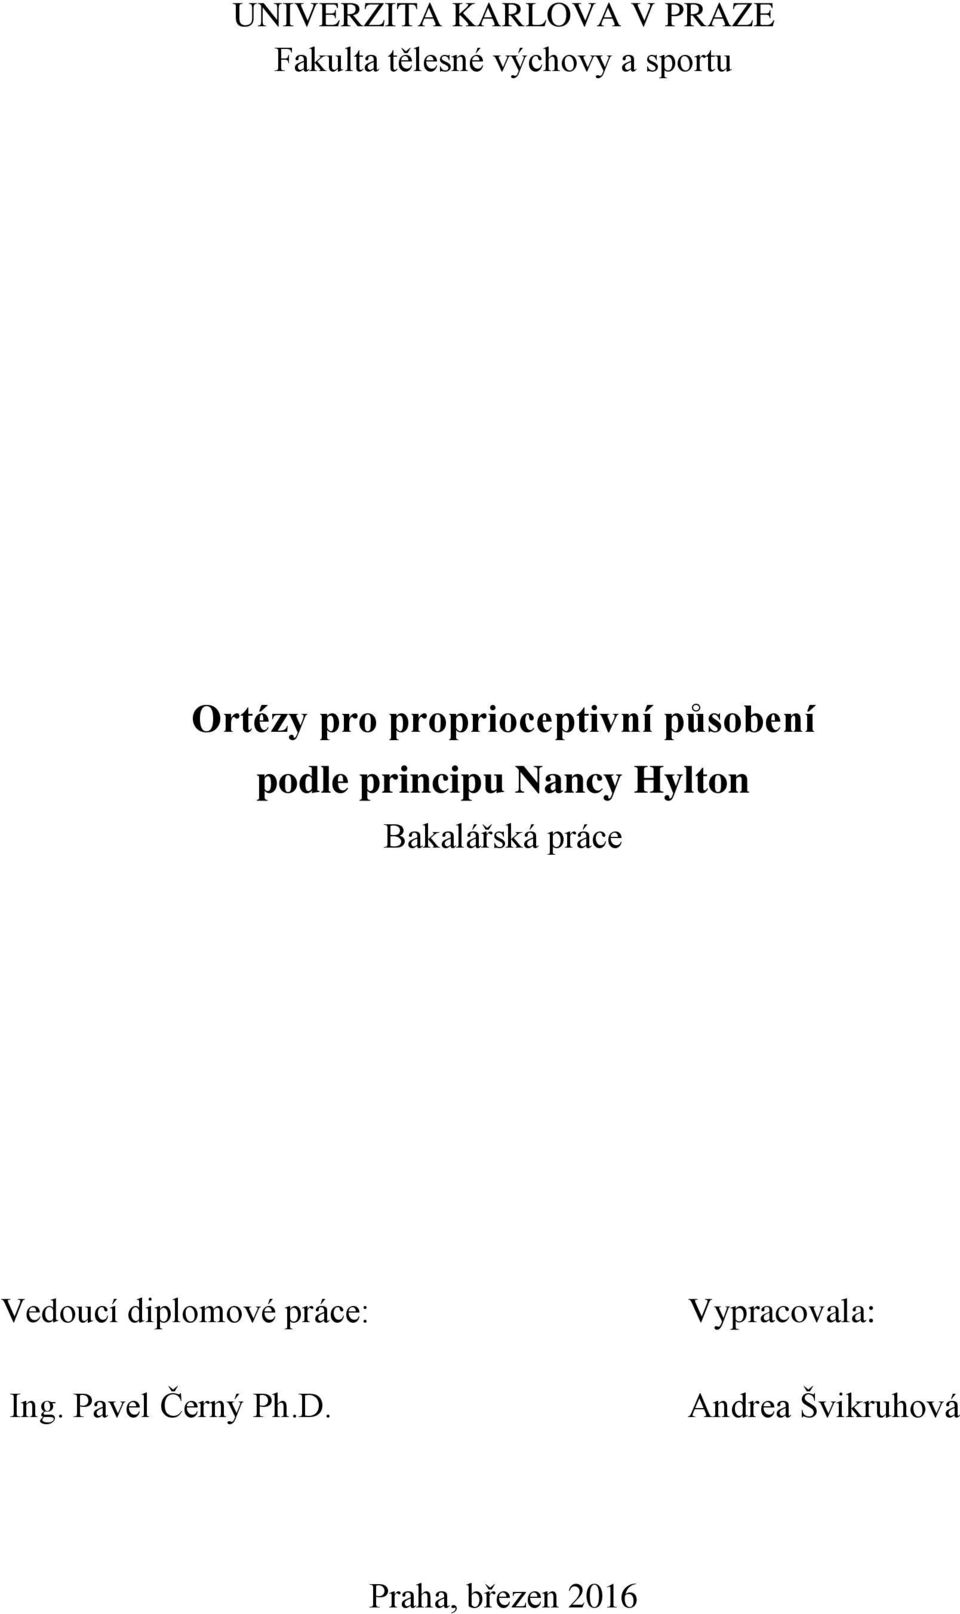 Ortézy pro proprioceptivní působení podle principu Nancy Hylton - PDF  Stažení zdarma